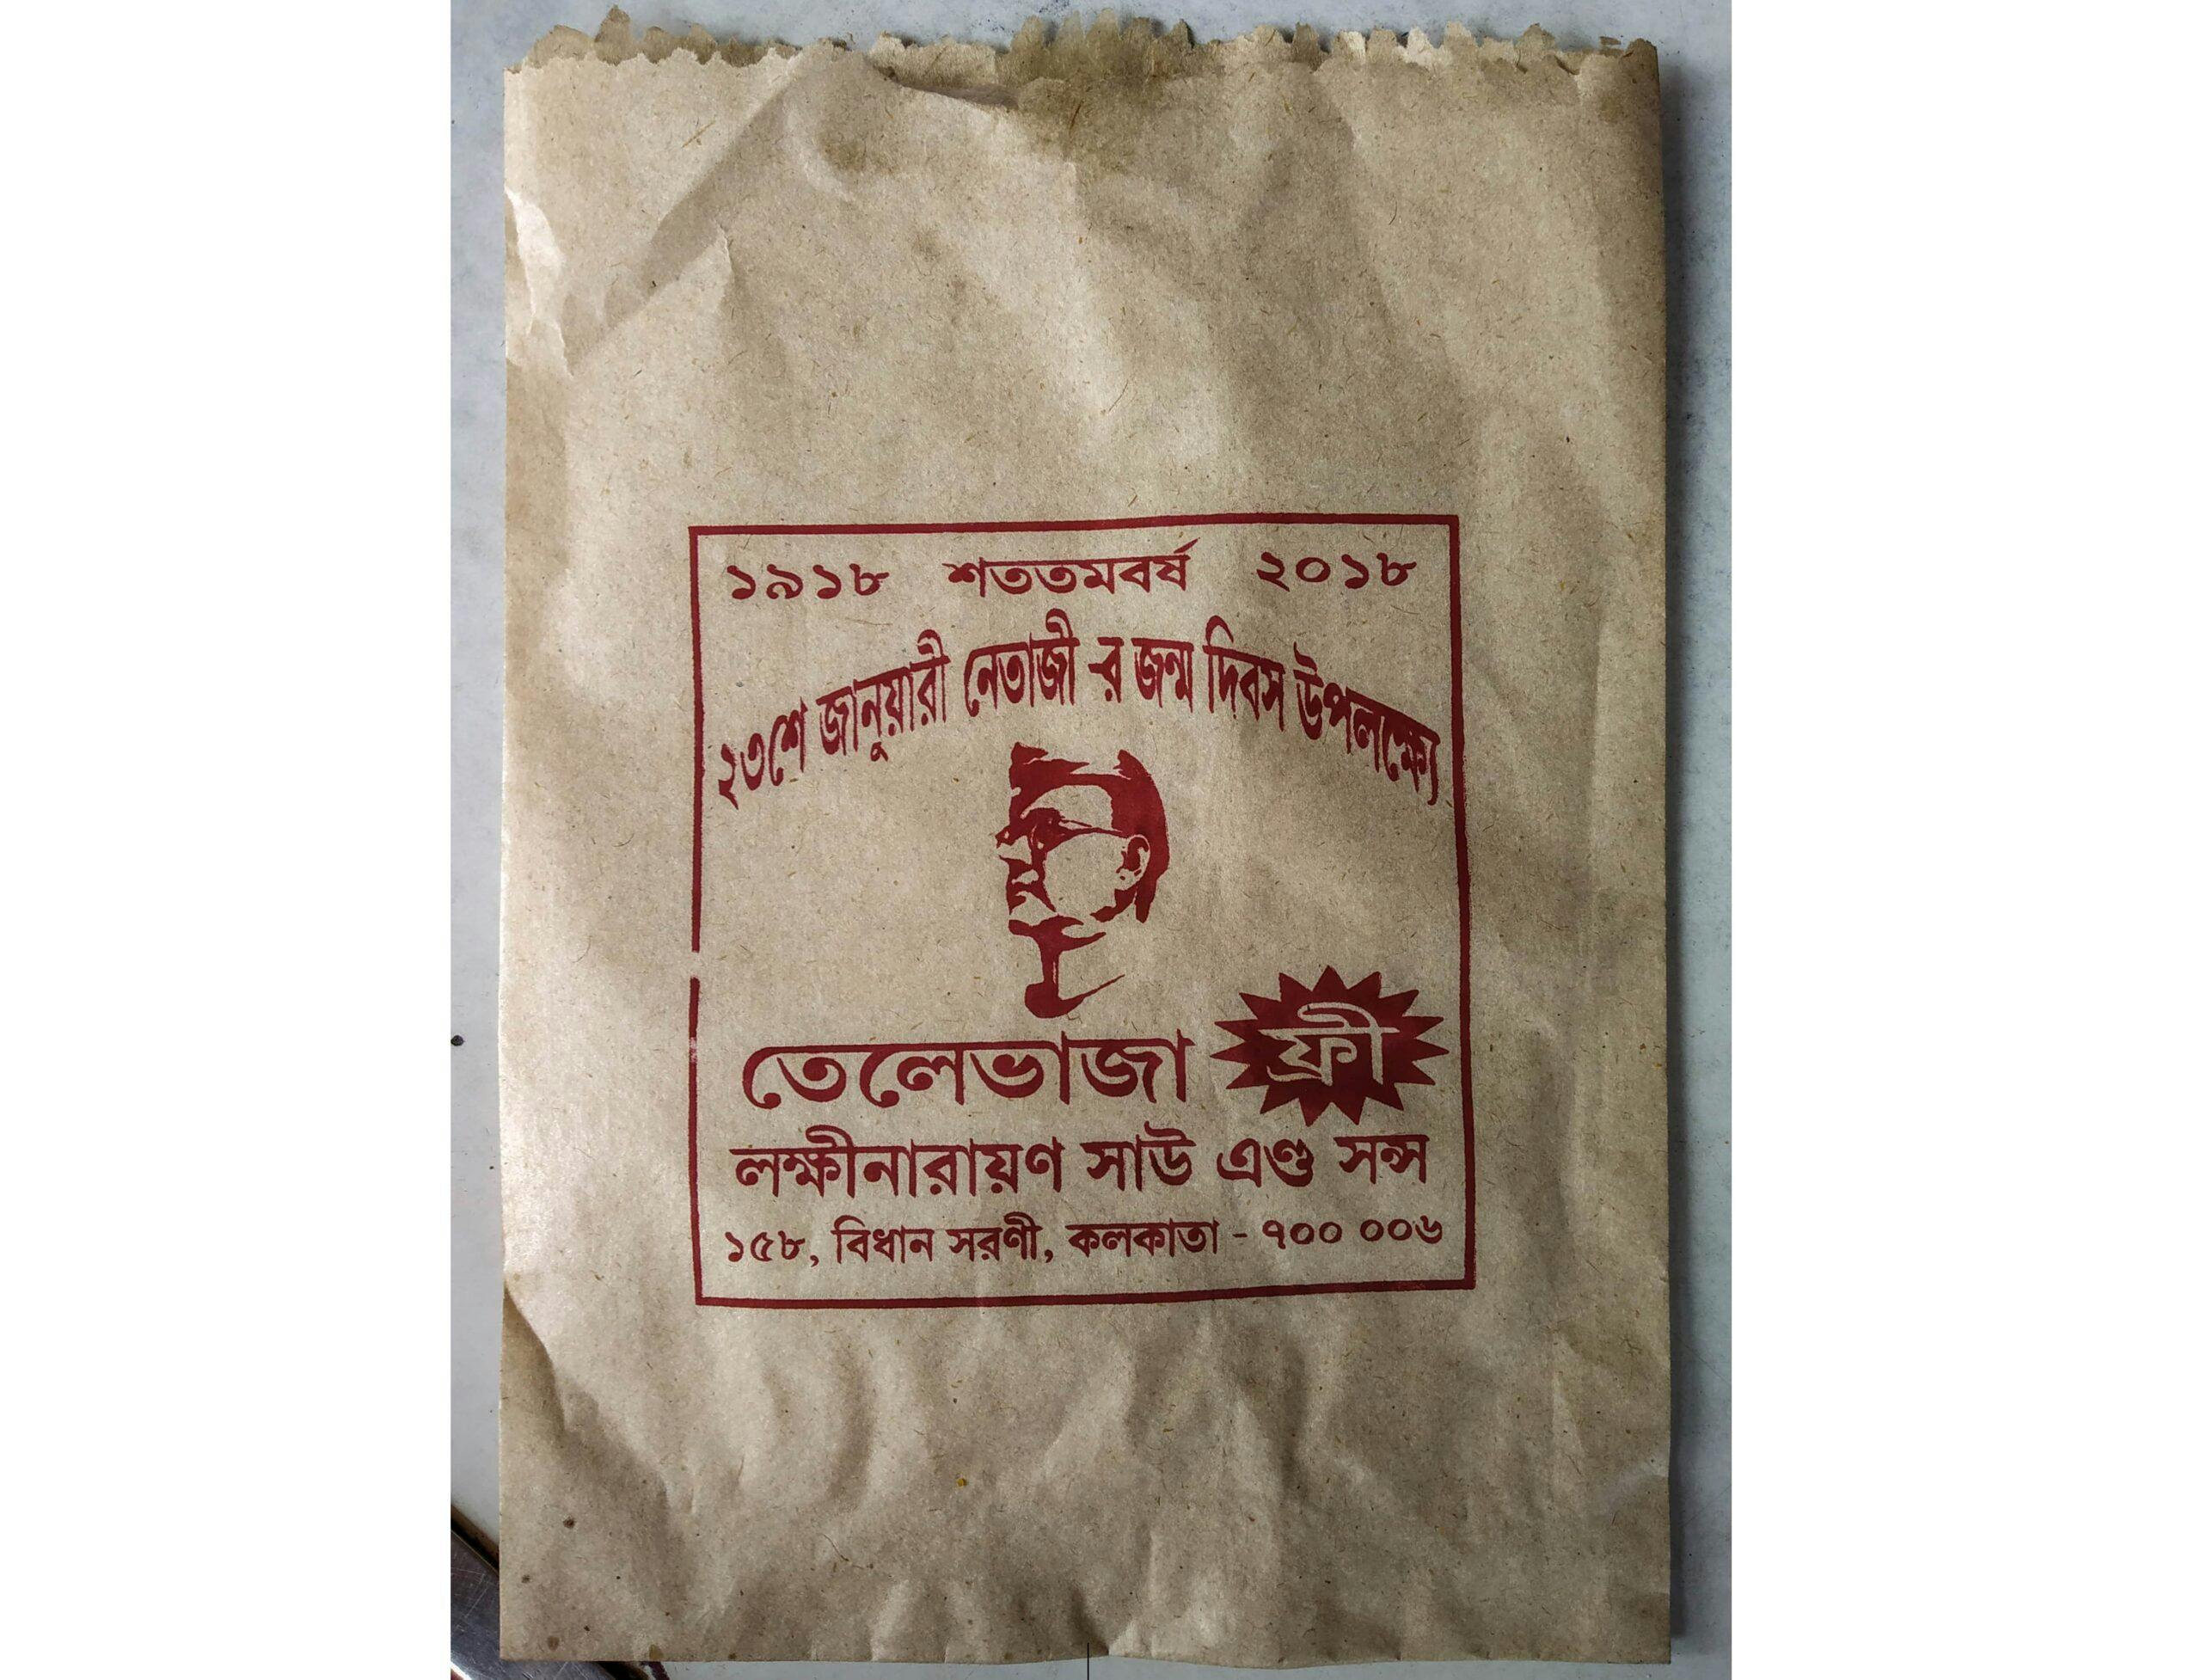 Laxmi Narayan Sahu & Sons Packaging